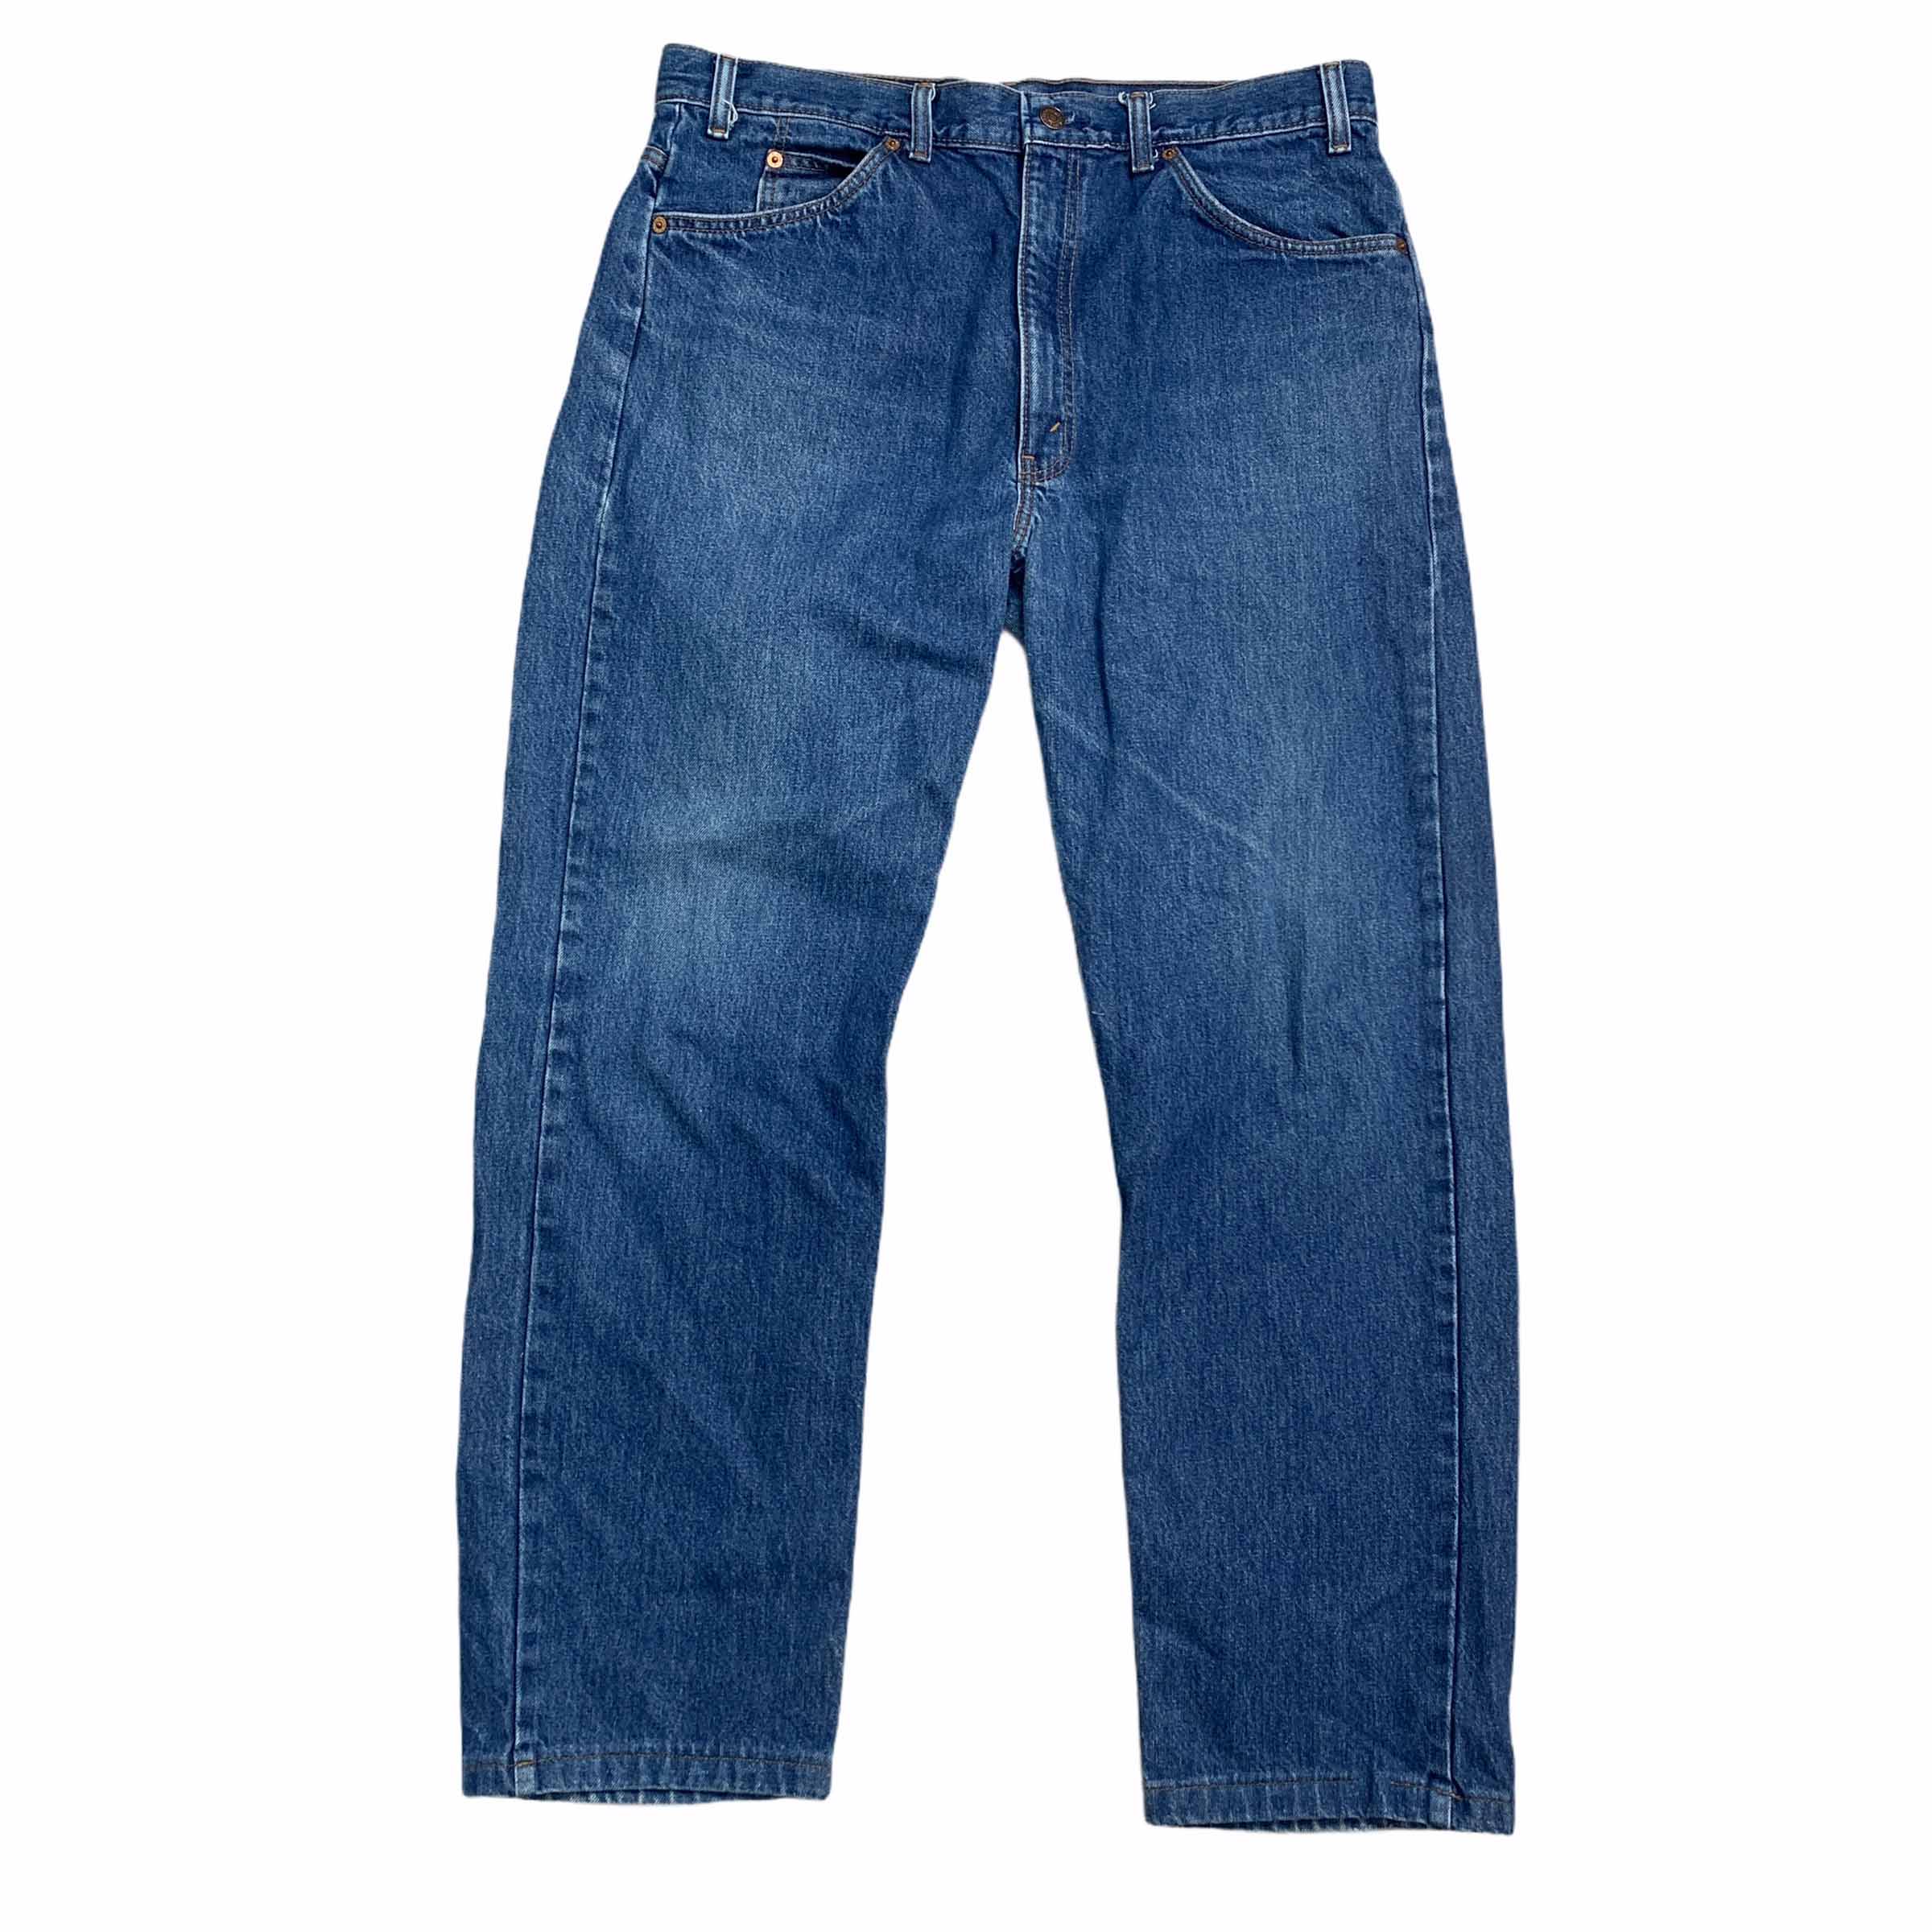 [Levis] (Vintage) 505 Denim pants - Size 38/32